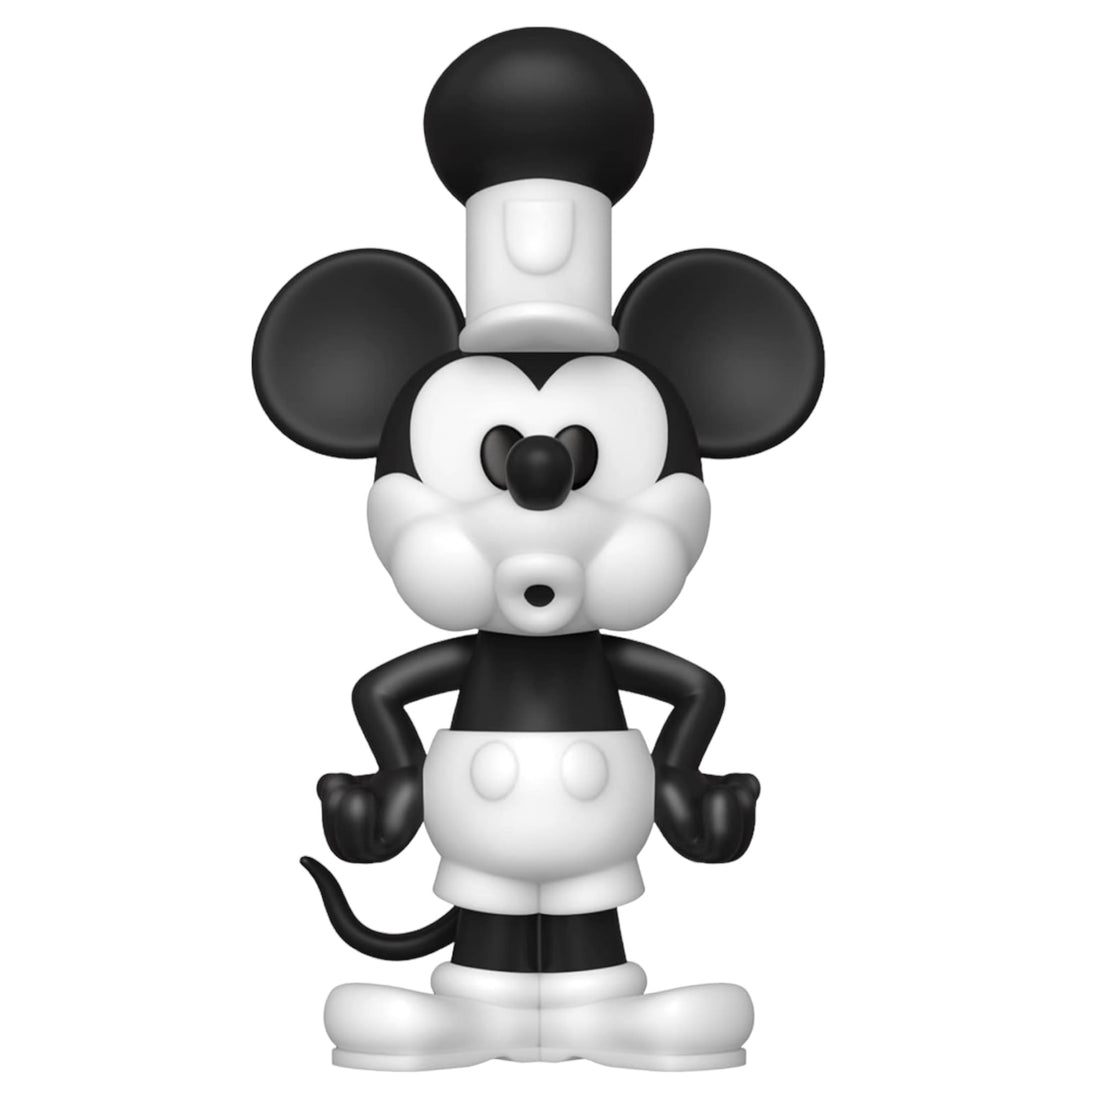 Funko Soda Disney Steamboat Mickey Funko Exclusive Figure